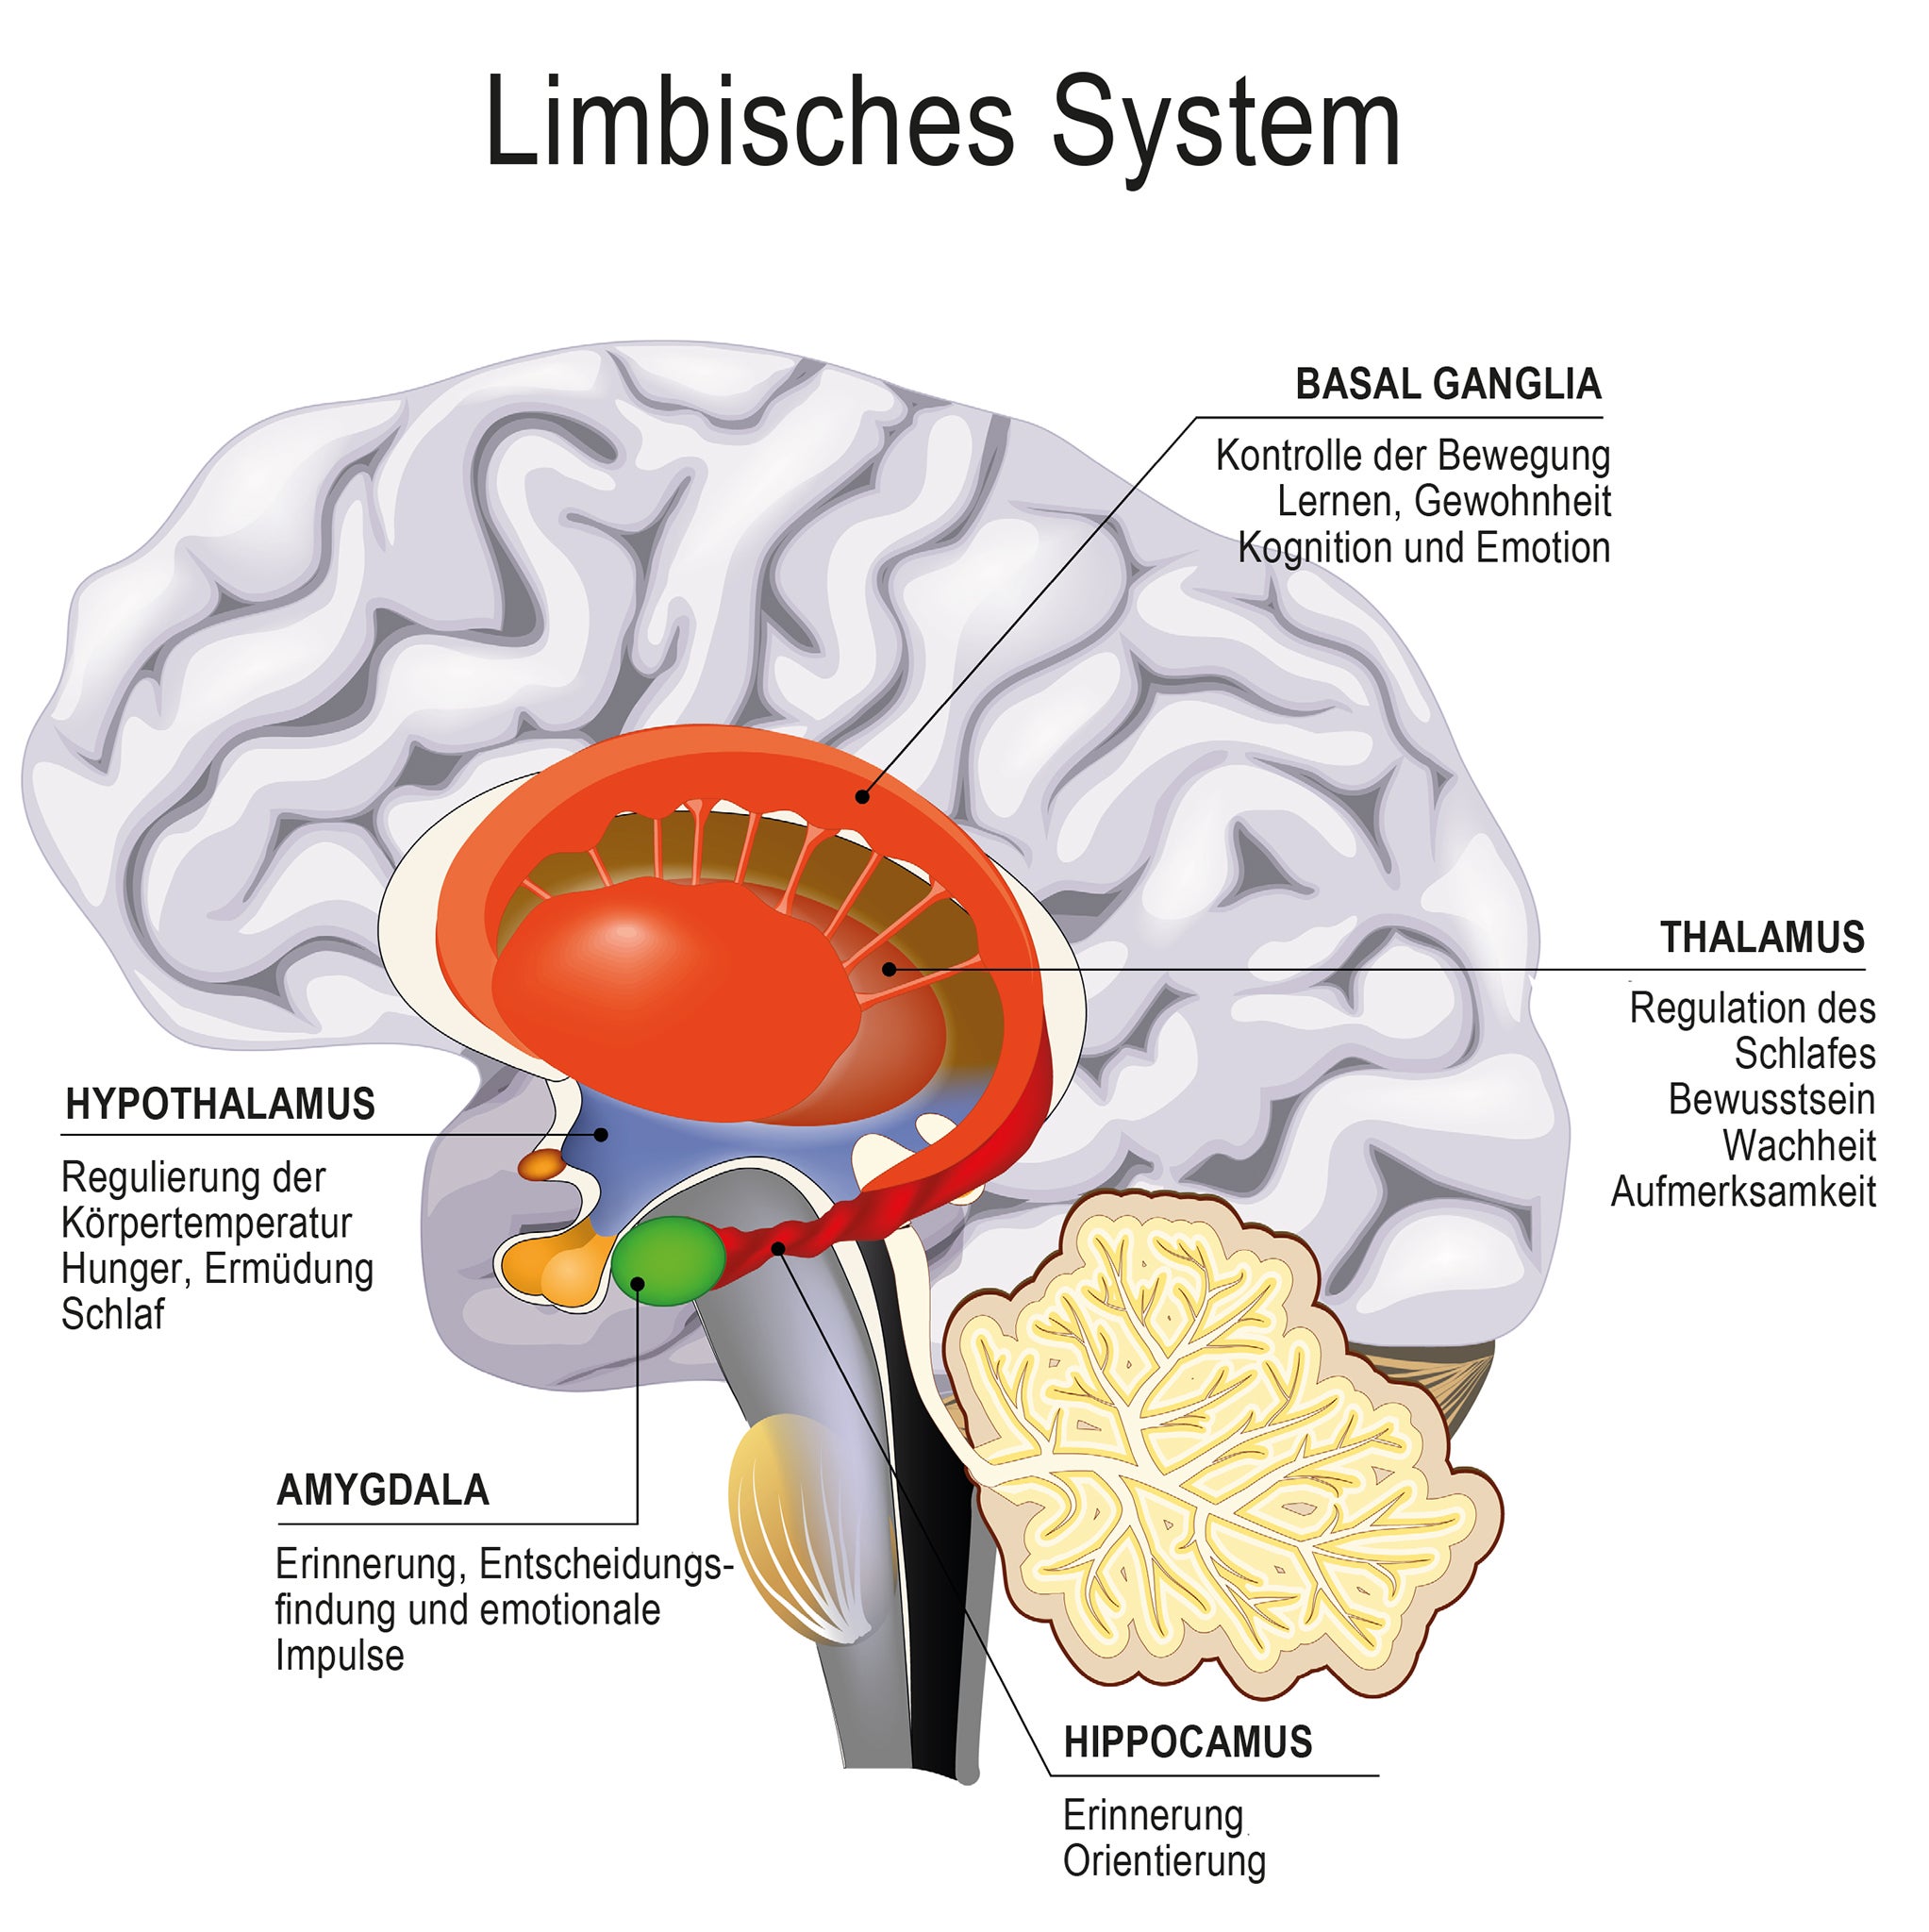 Die Illustration zeigt das sogenannte limbische System im Gehirn. Details im Text beschrieben